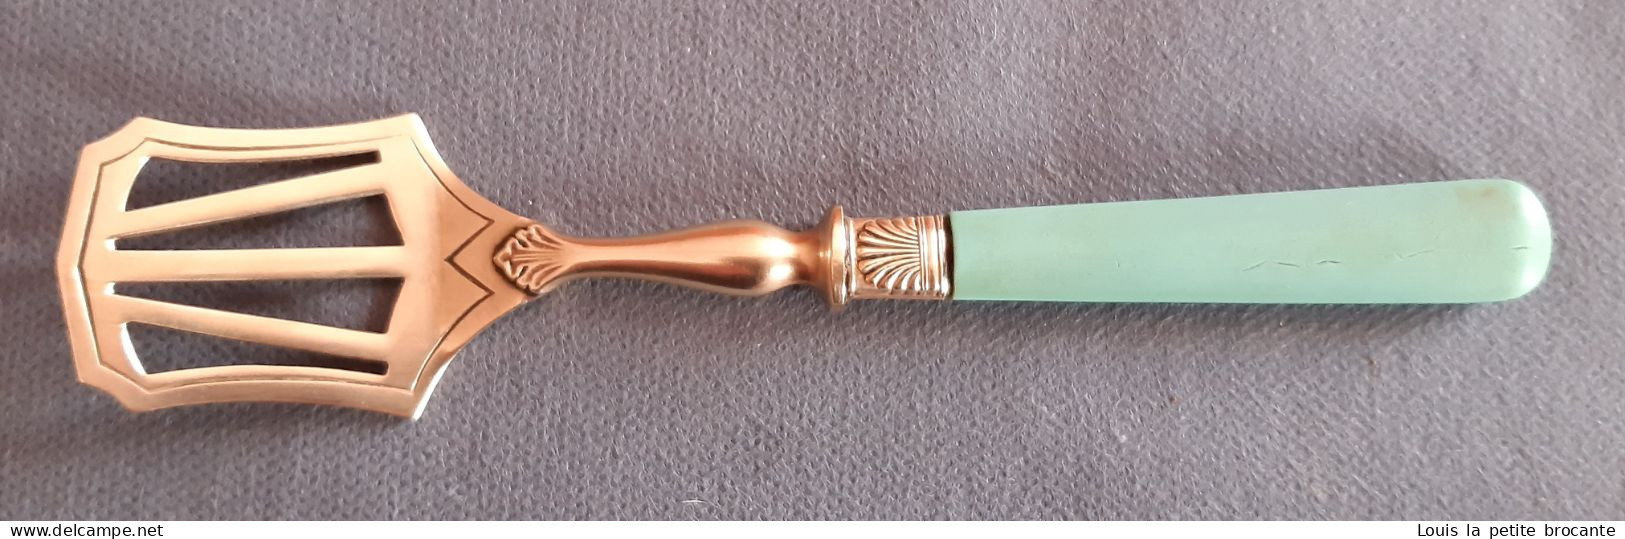 Joli service à mignardises début XXème siècle, 1 couteau, une fourchette, une cuillère et une pèle.